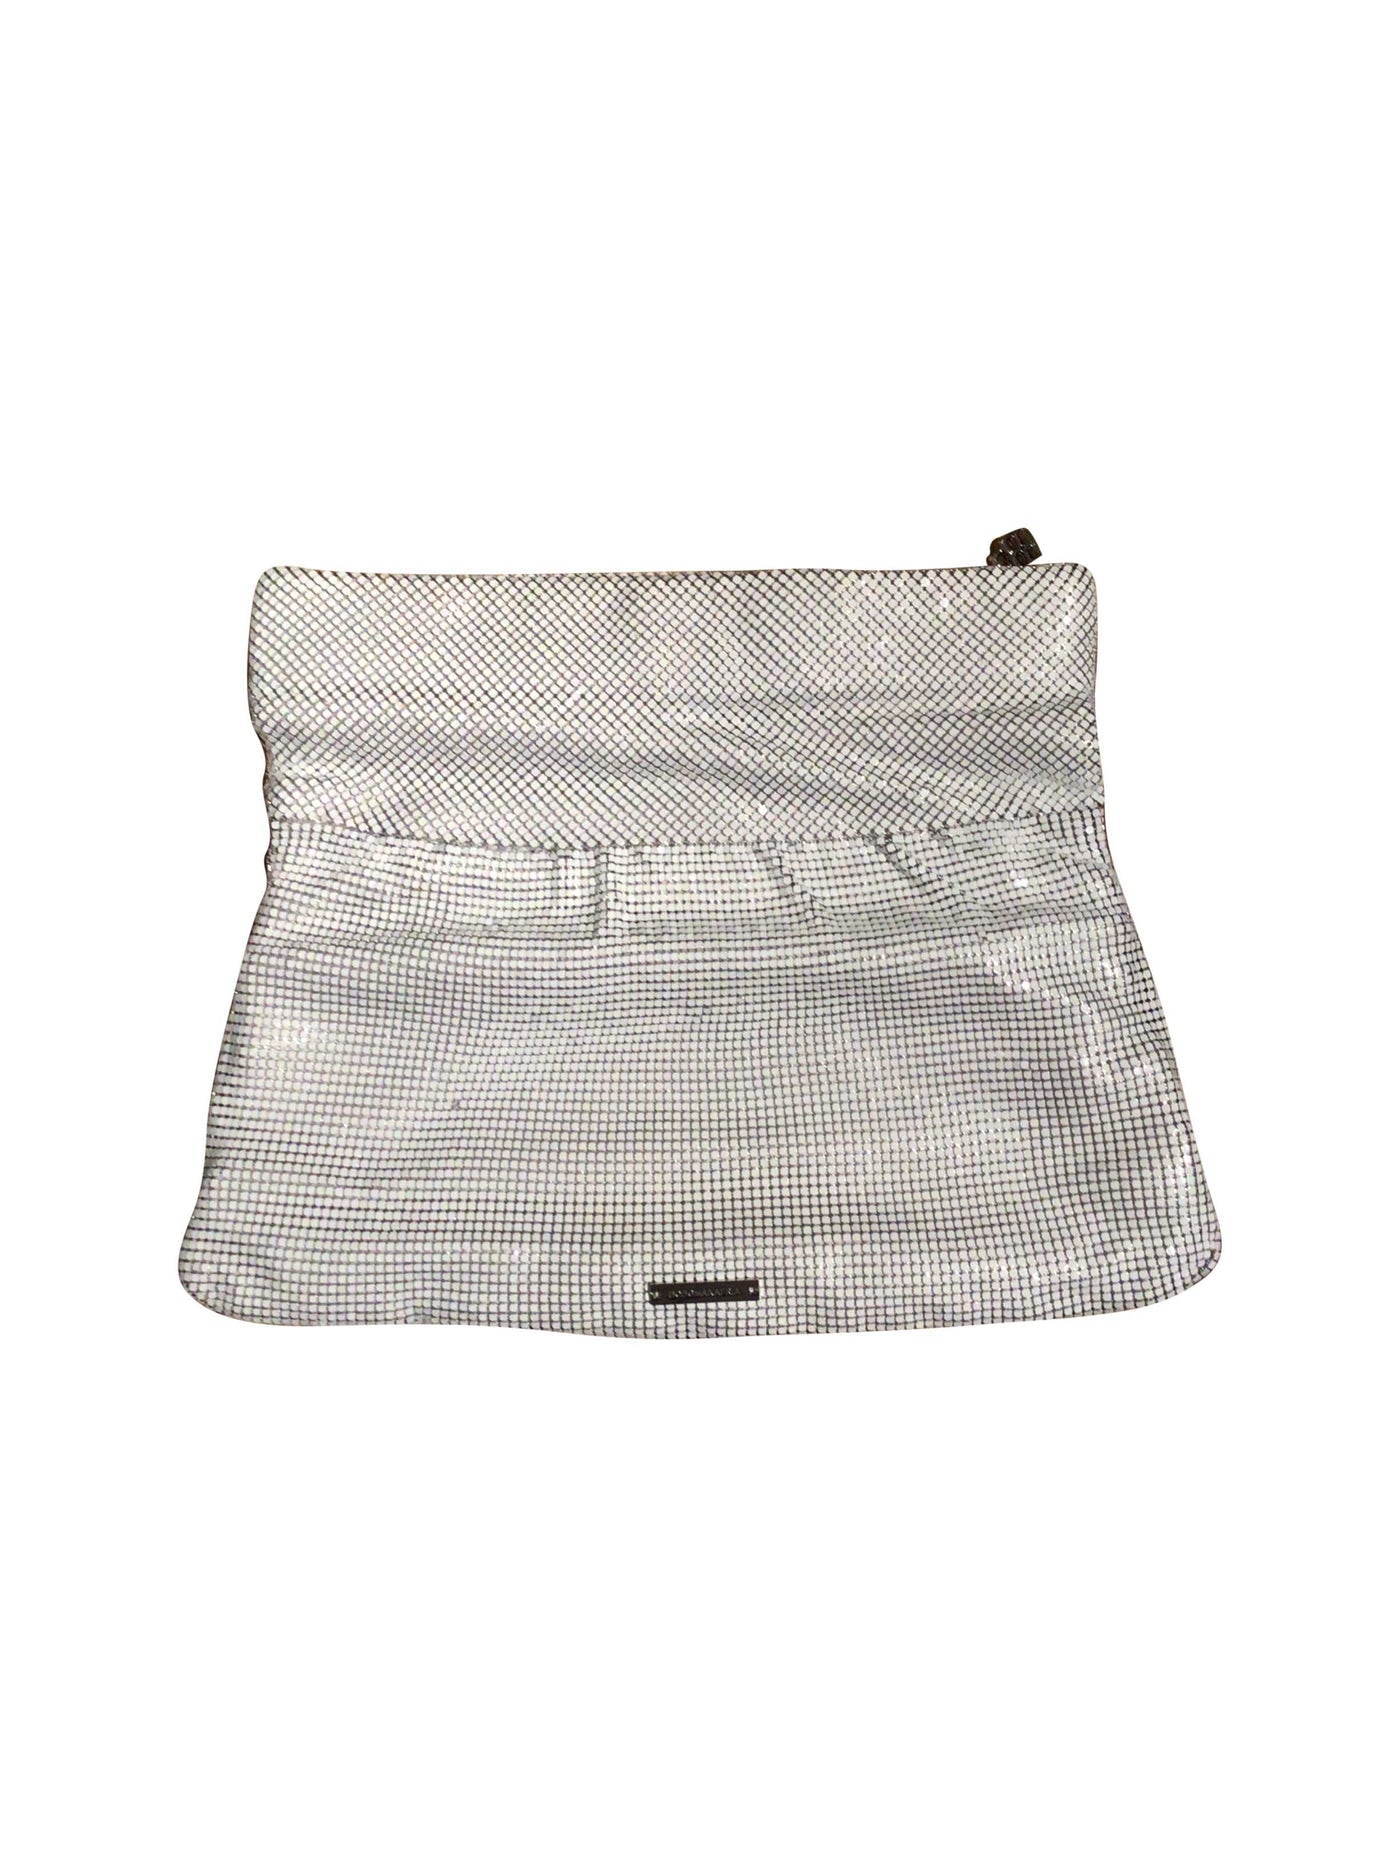 BCBG MAX AZRIA Bag in White  -  S  27.50 Koop